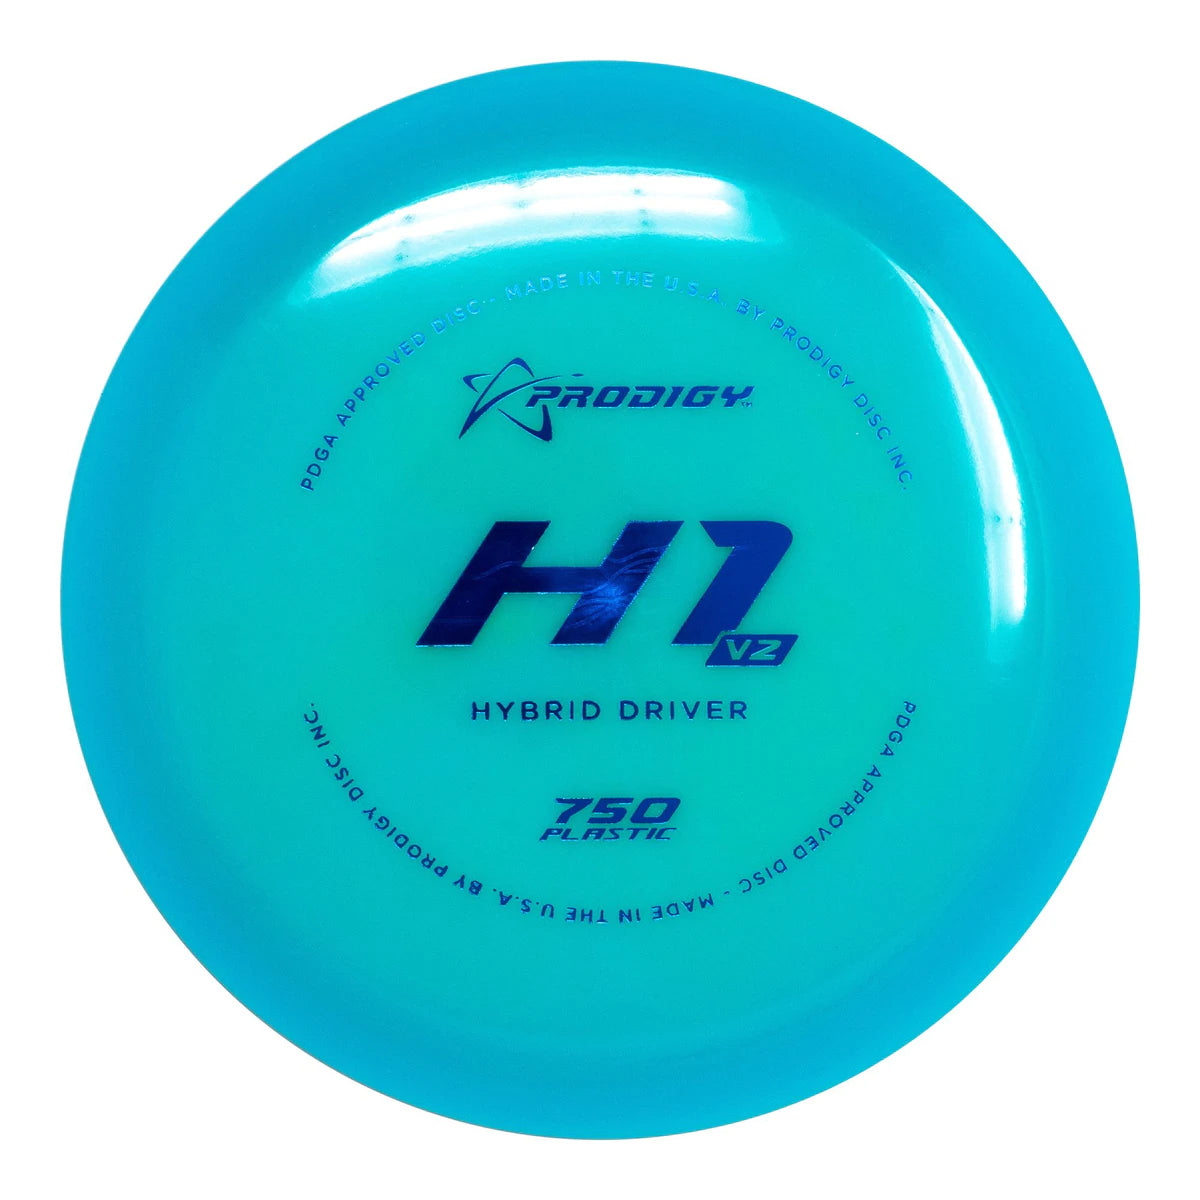 H1 V2 - 750 Plastic